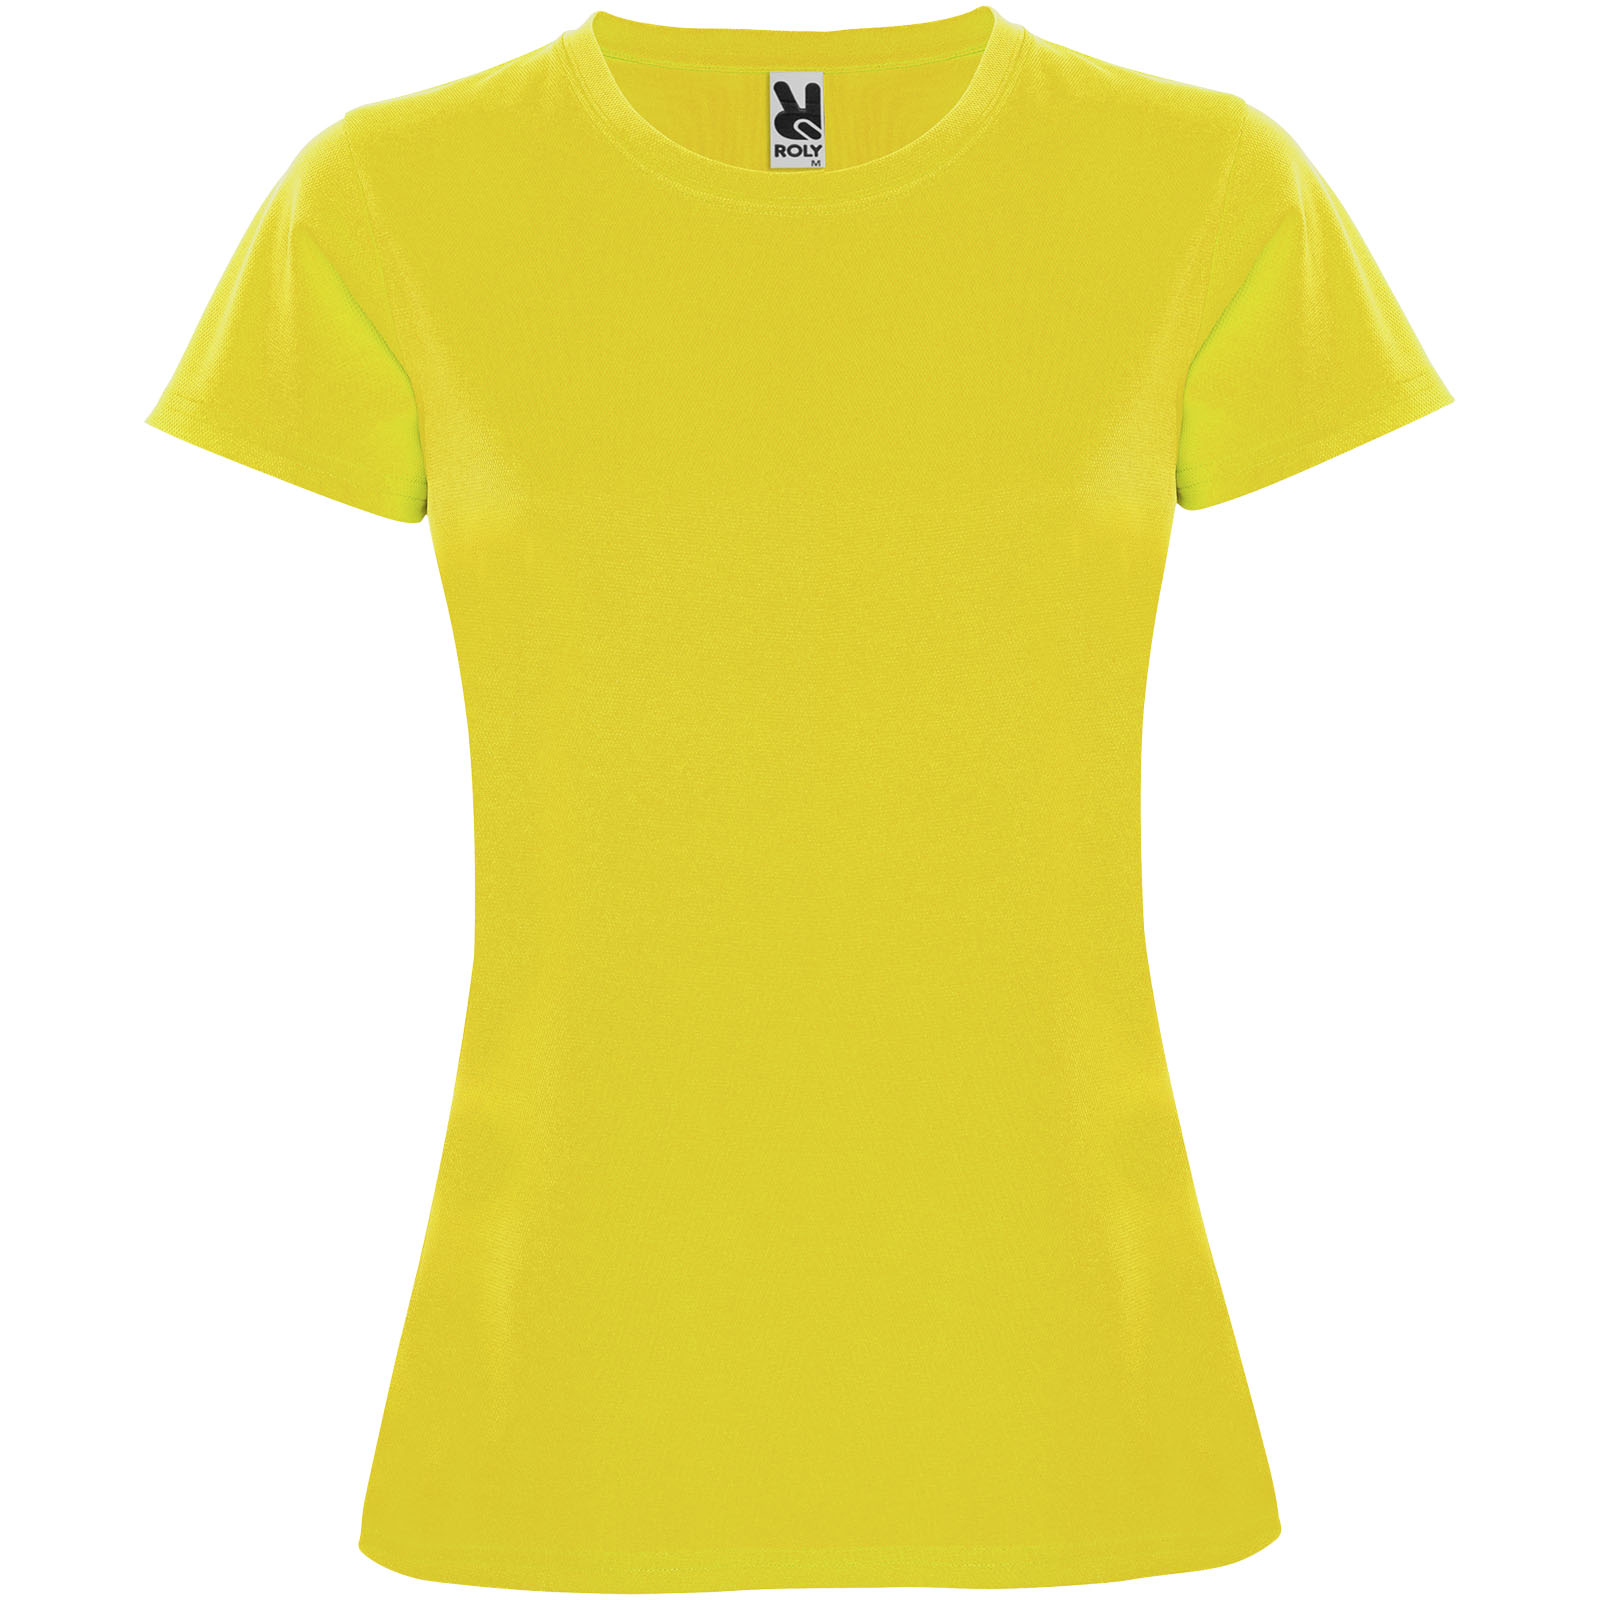 Vêtements - T-shirt sport Montecarlo à manches courtes pour femme